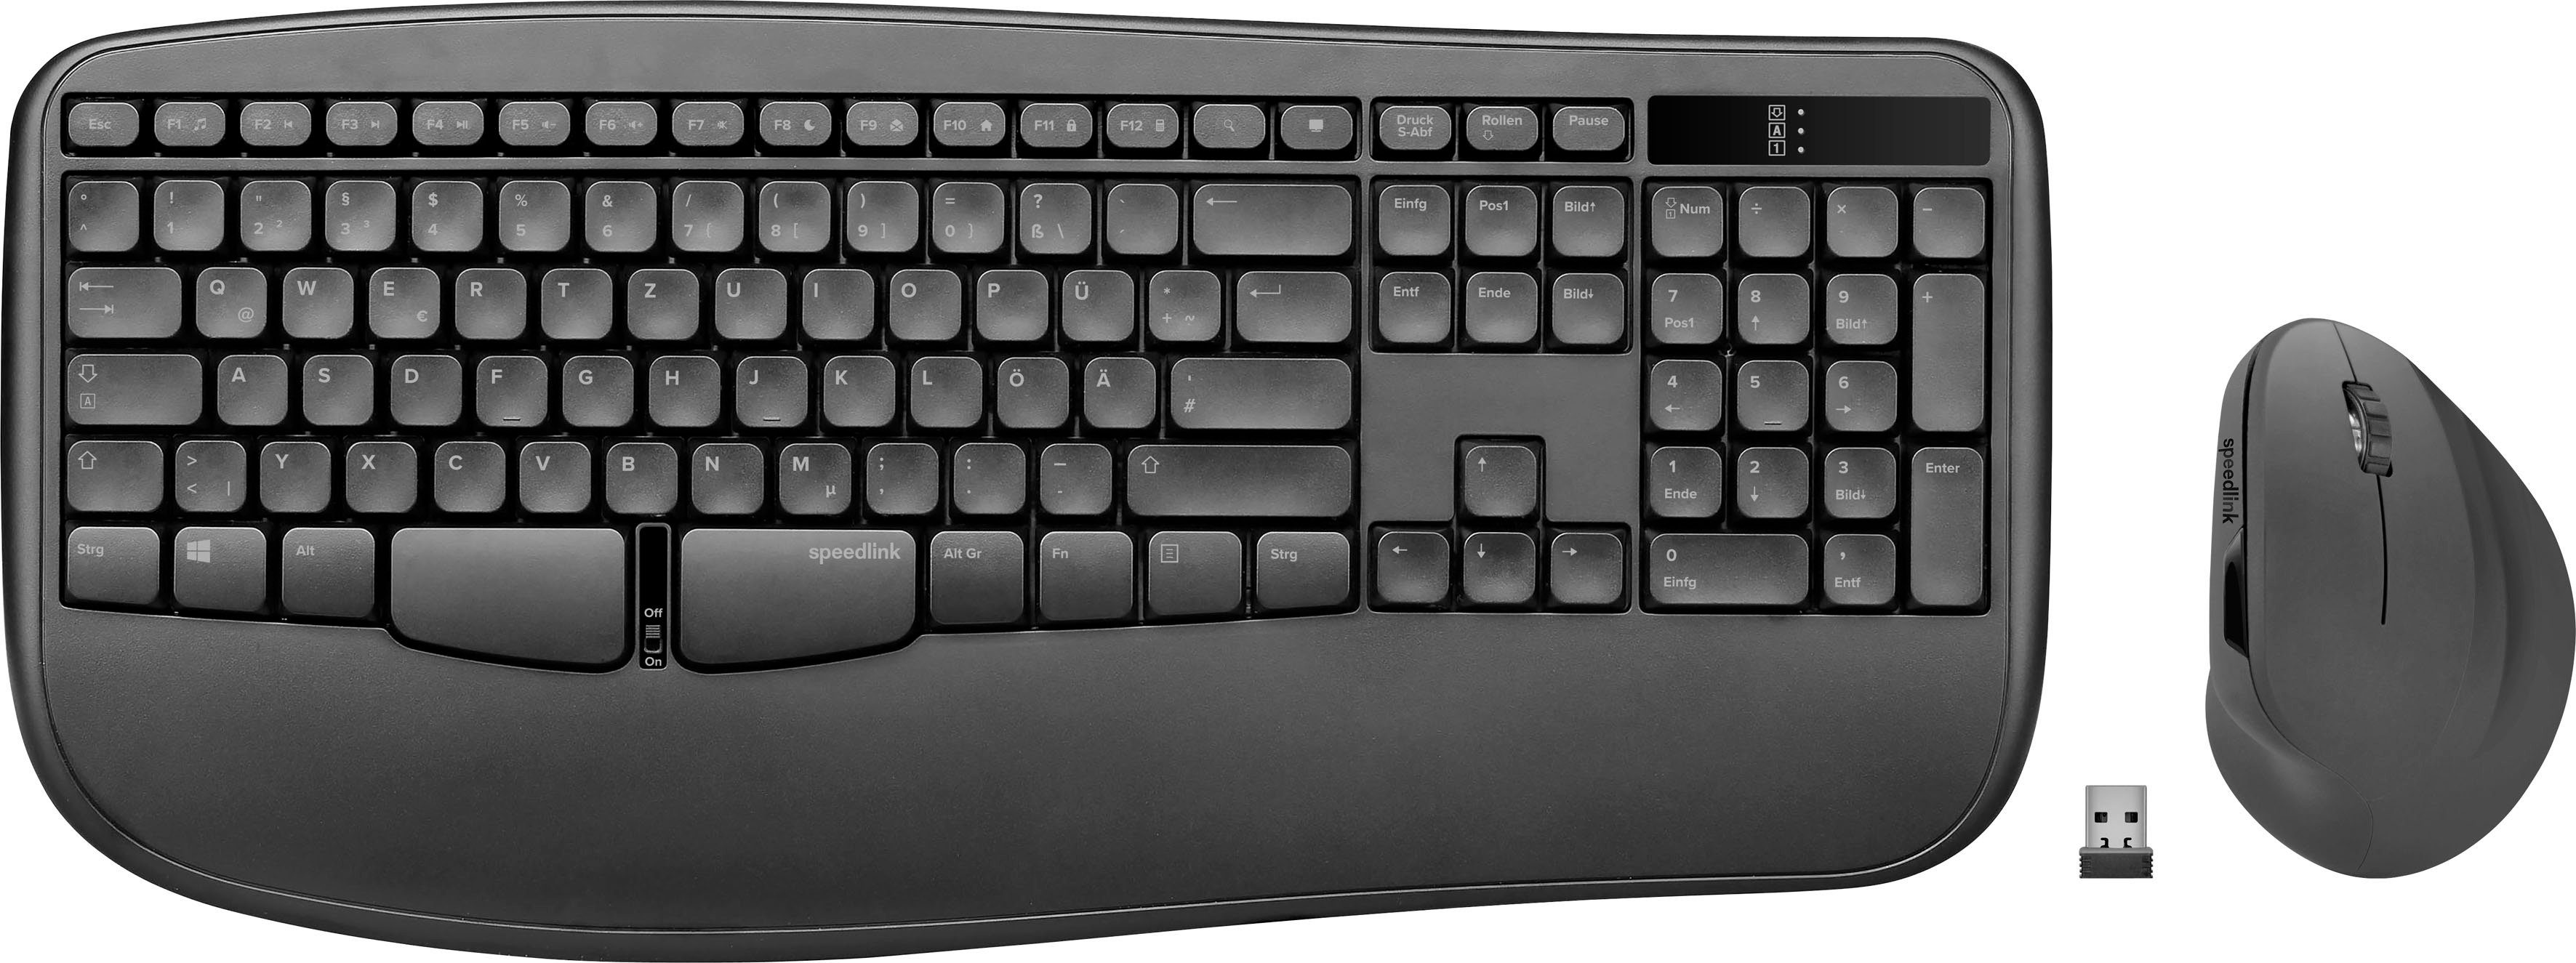 Speedlink »PIAVO Kabelloses PC Deskset Maus Tastatur« Mäuse (Ergonomisch  Wireless Keyboard Mouse Set, Multimedia Tasten, Vertikale Maus, 10m  Reichweite mit 2,4-GHz-Funk)